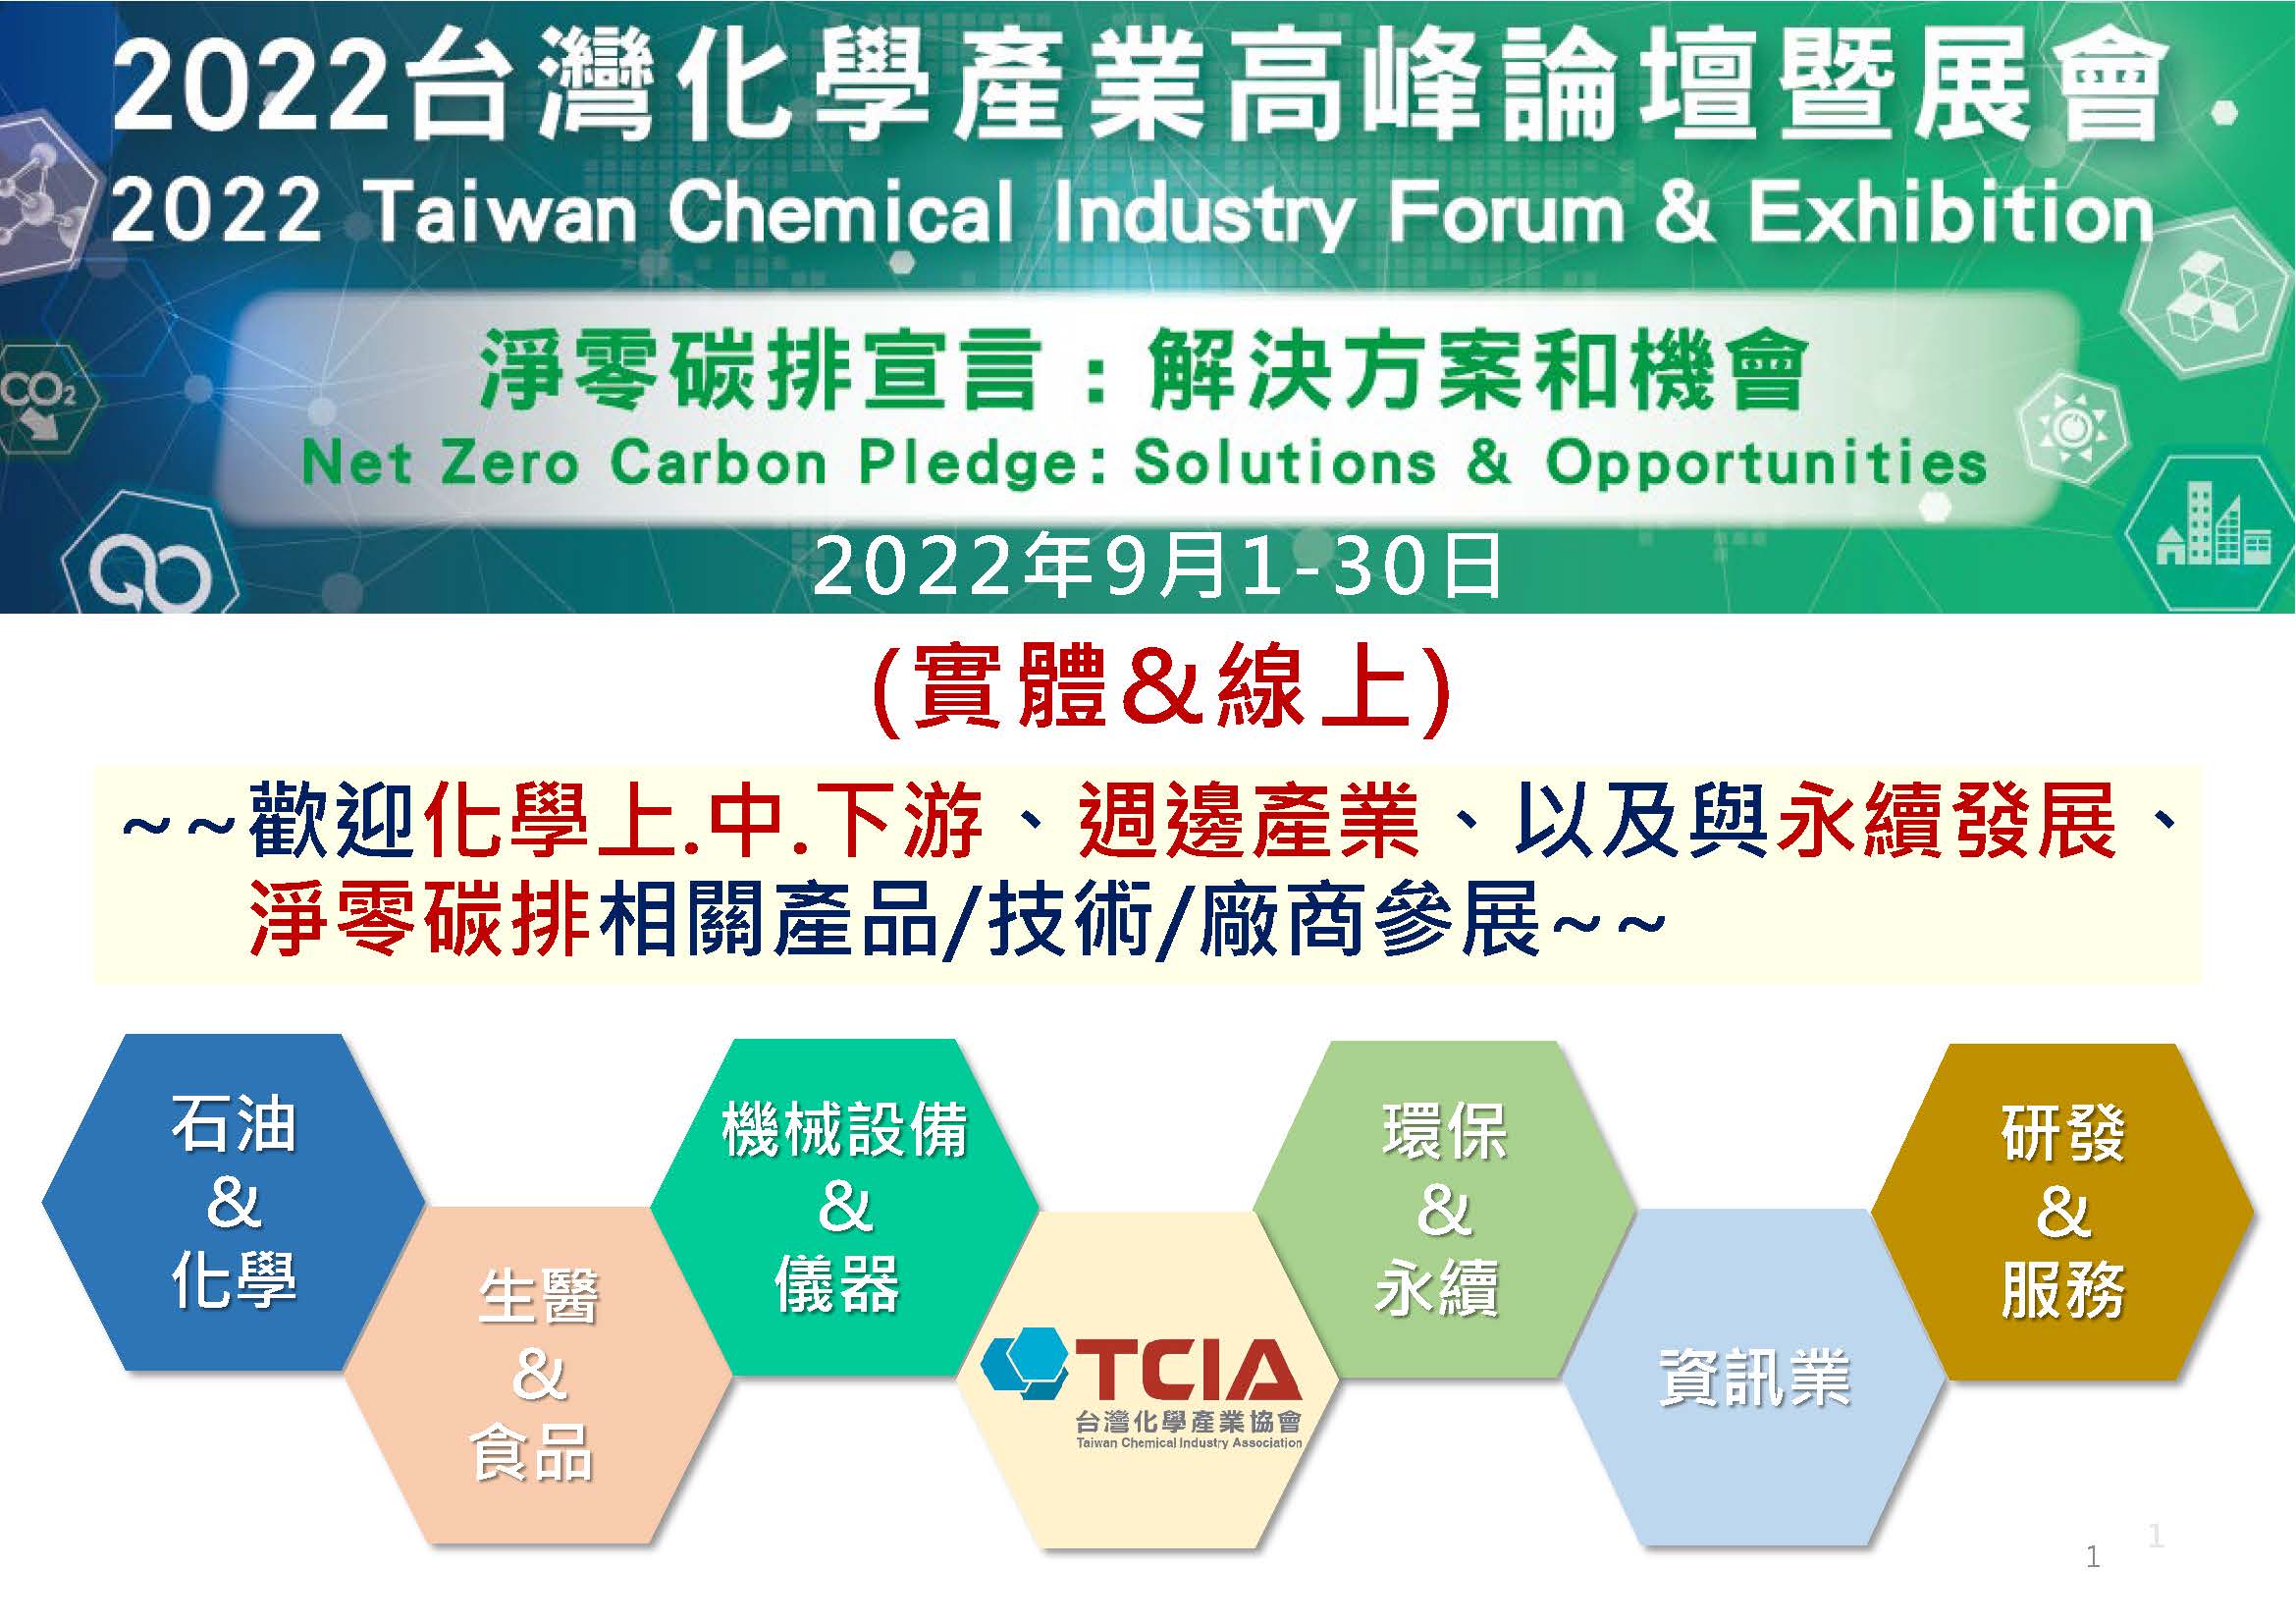 【論壇】2022年台灣化學產業高峰論壇暨展會(2022/9/1-9/30)